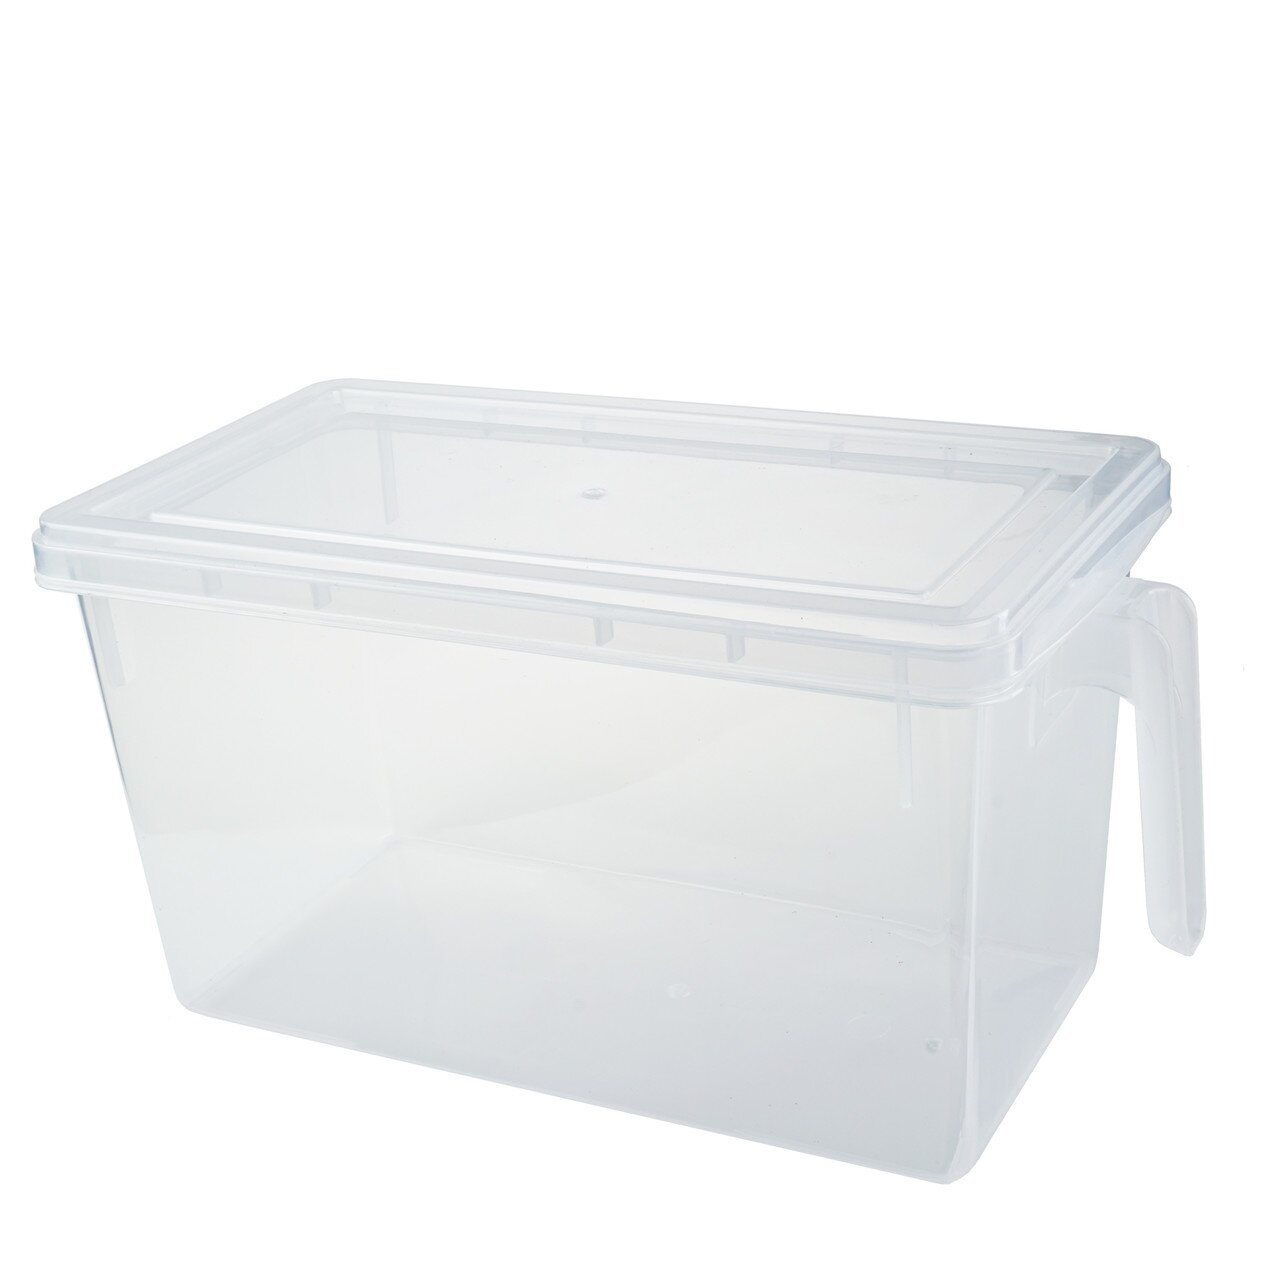 Акция на Контейнер Supretto для зберігання продуктів в холодильник прозорий (5544) от Wellamart - 5